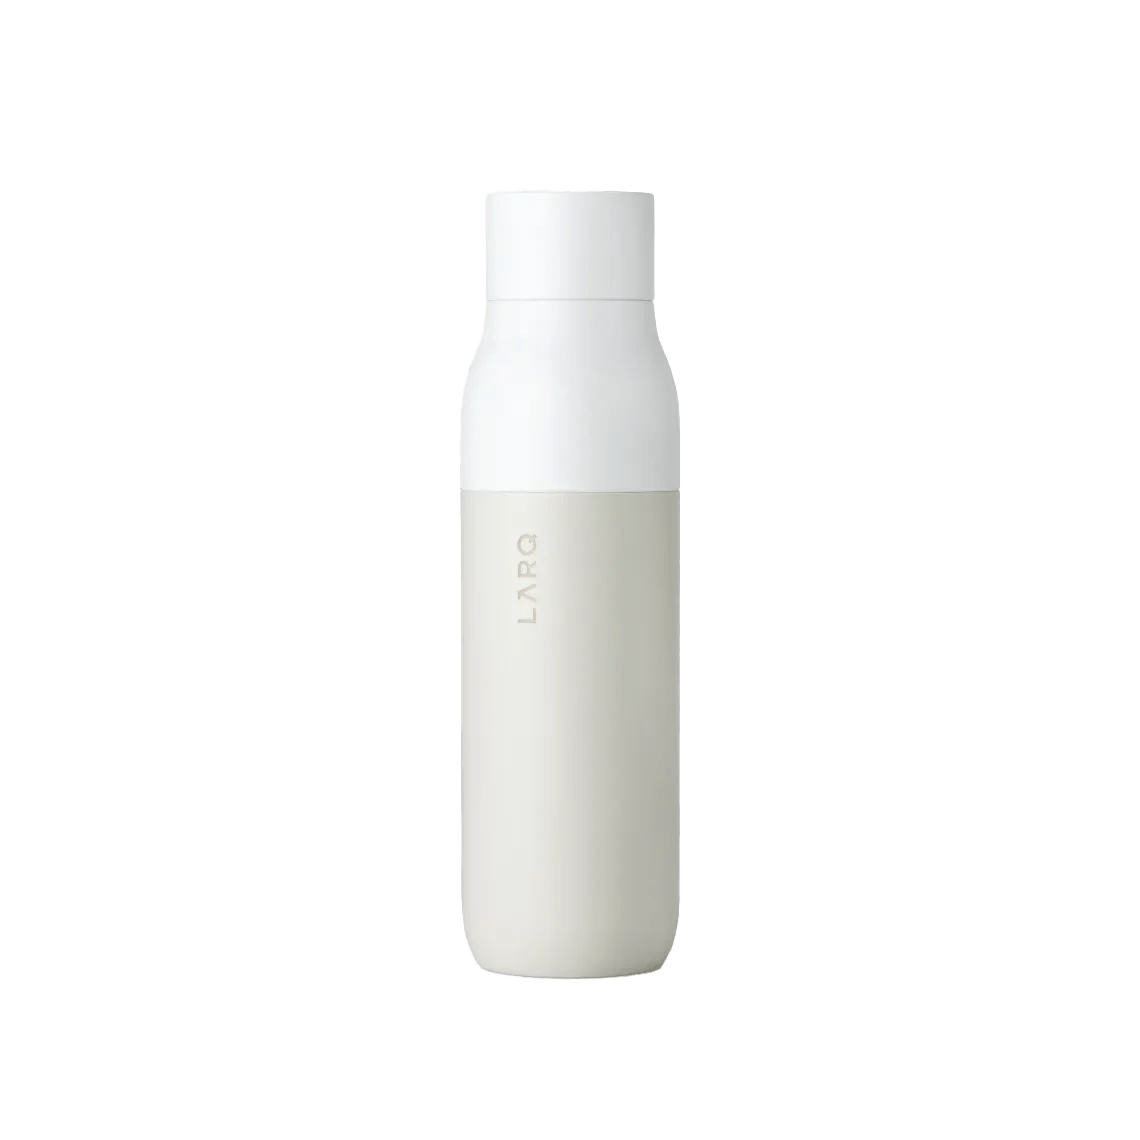 LARQ Self-Cleaning Water Bottle 17 oz. - Seaside Mint